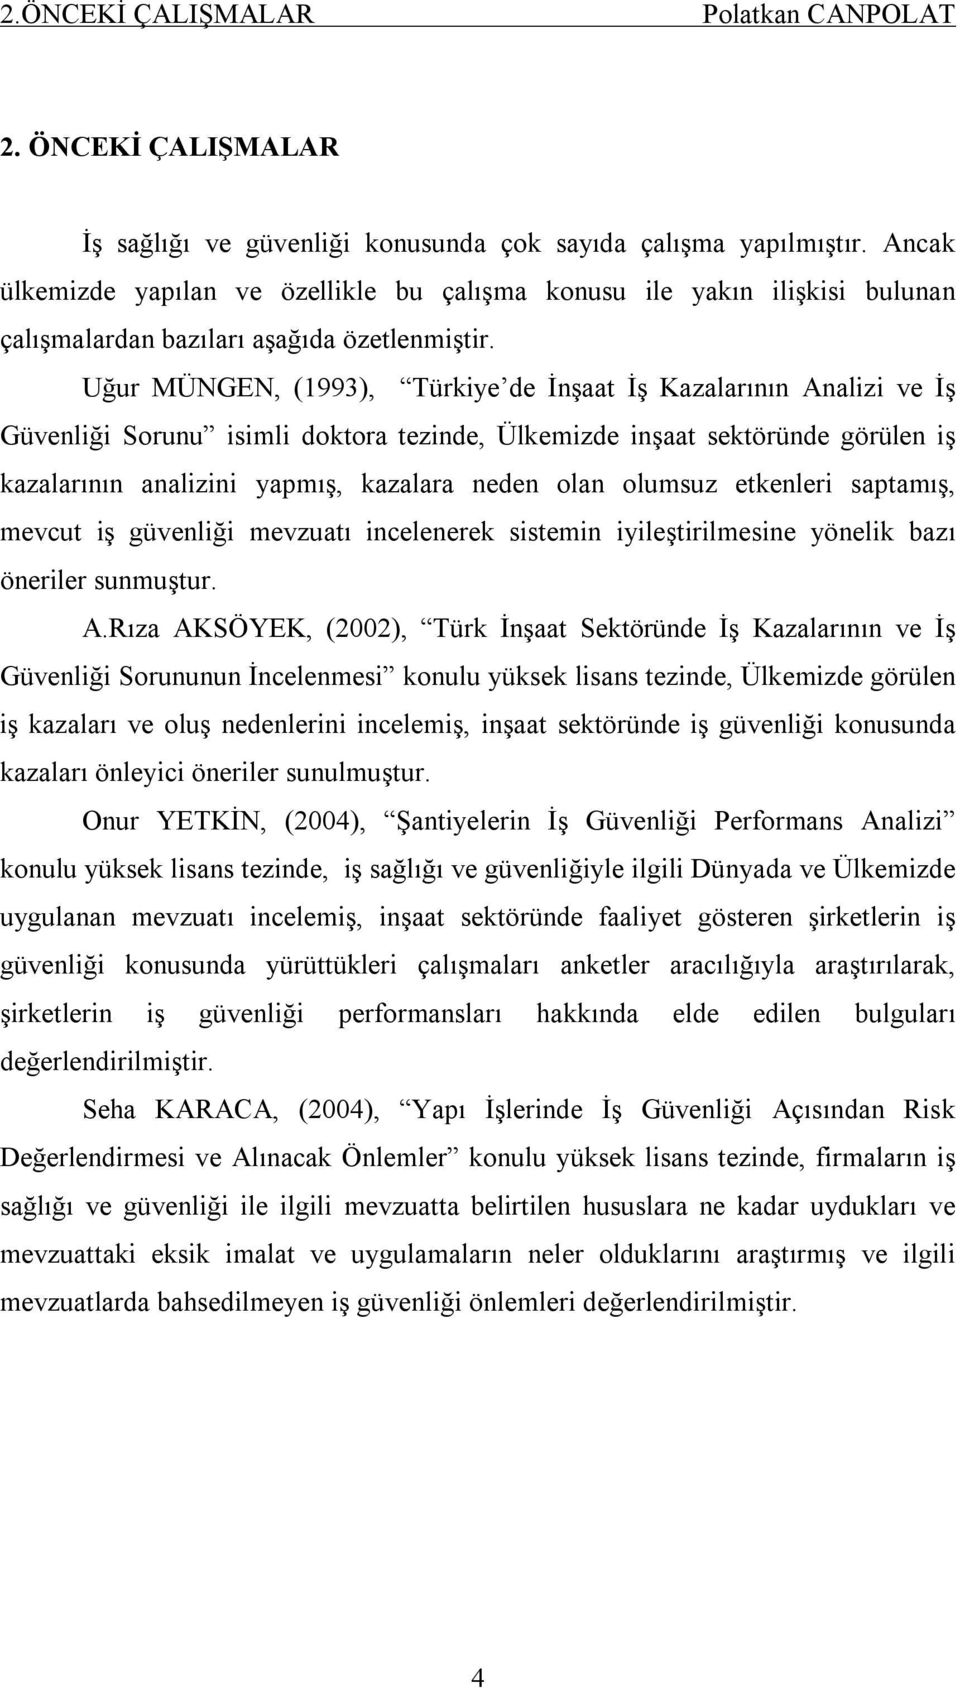 Uğur MÜNGEN, (1993), Türkiye de İnşaat İş Kazalarının Analizi ve İş Güvenliği Sorunu isimli doktora tezinde, Ülkemizde inşaat sektöründe görülen iş kazalarının analizini yapmış, kazalara neden olan